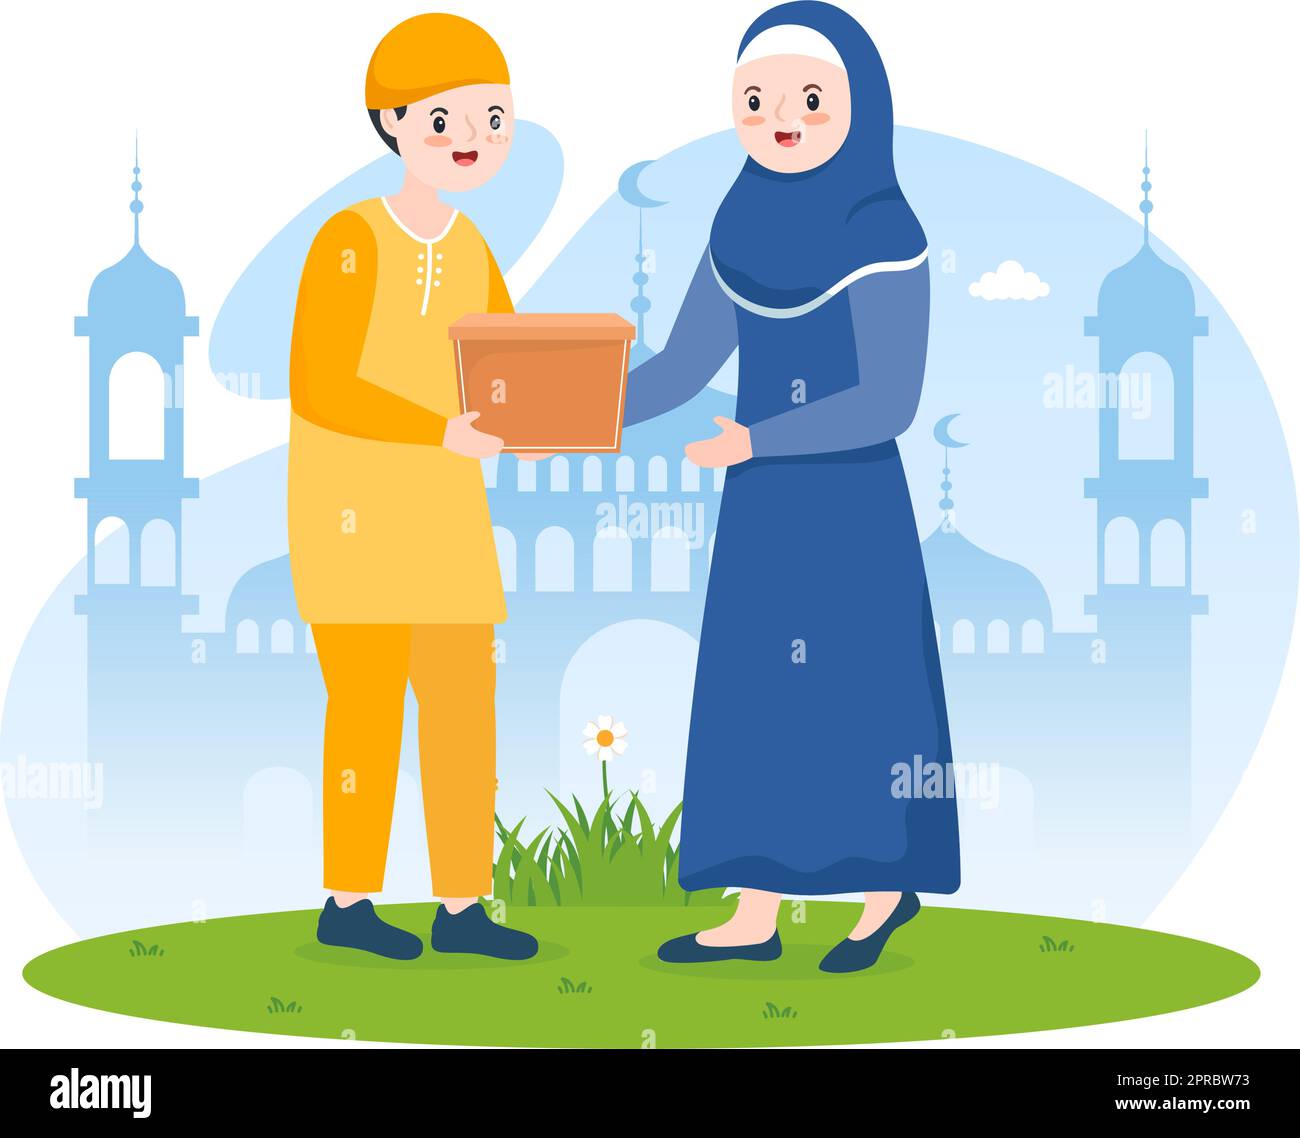 Muslimische Menschen spenden Almosen, Zakat oder Infaq an eine Person, die sie benötigt, in der Abbildung „Flat Cartoon Poster Hand Drawn Templates“ Stock Vektor